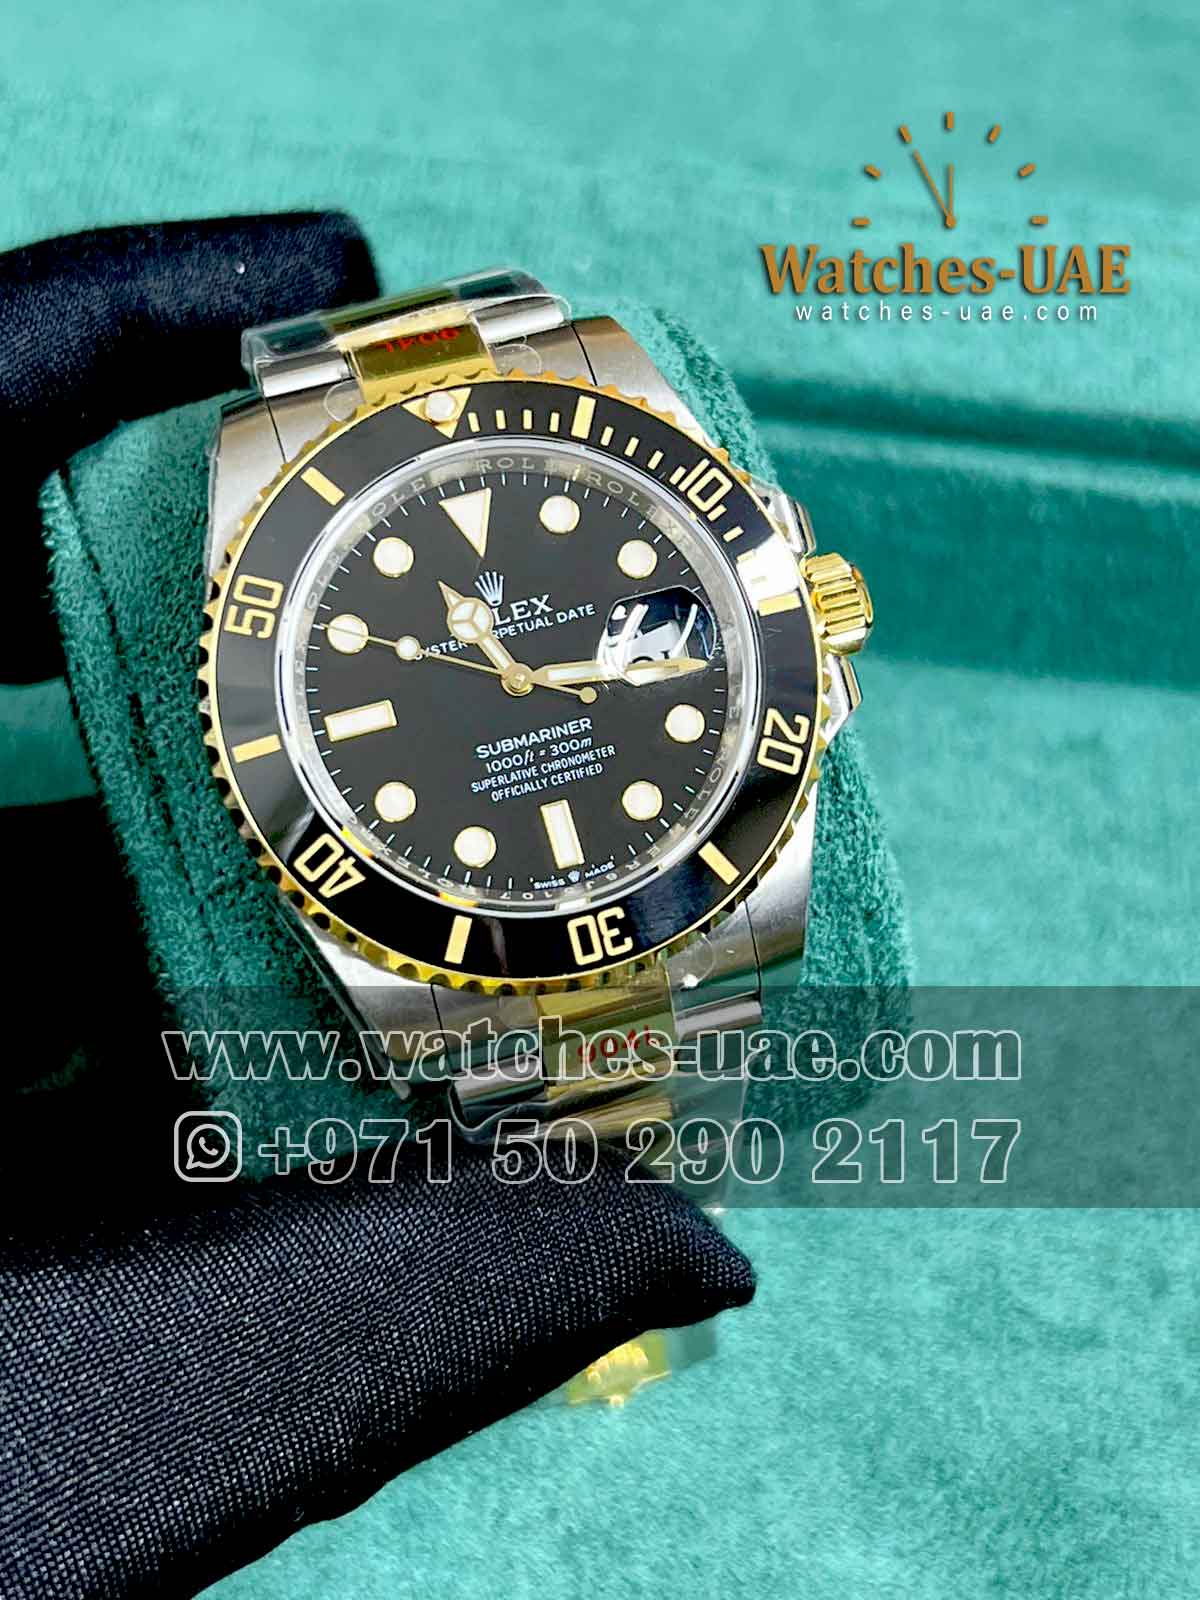 Rolex Submariner Ref 126613 LN - Watches UAE